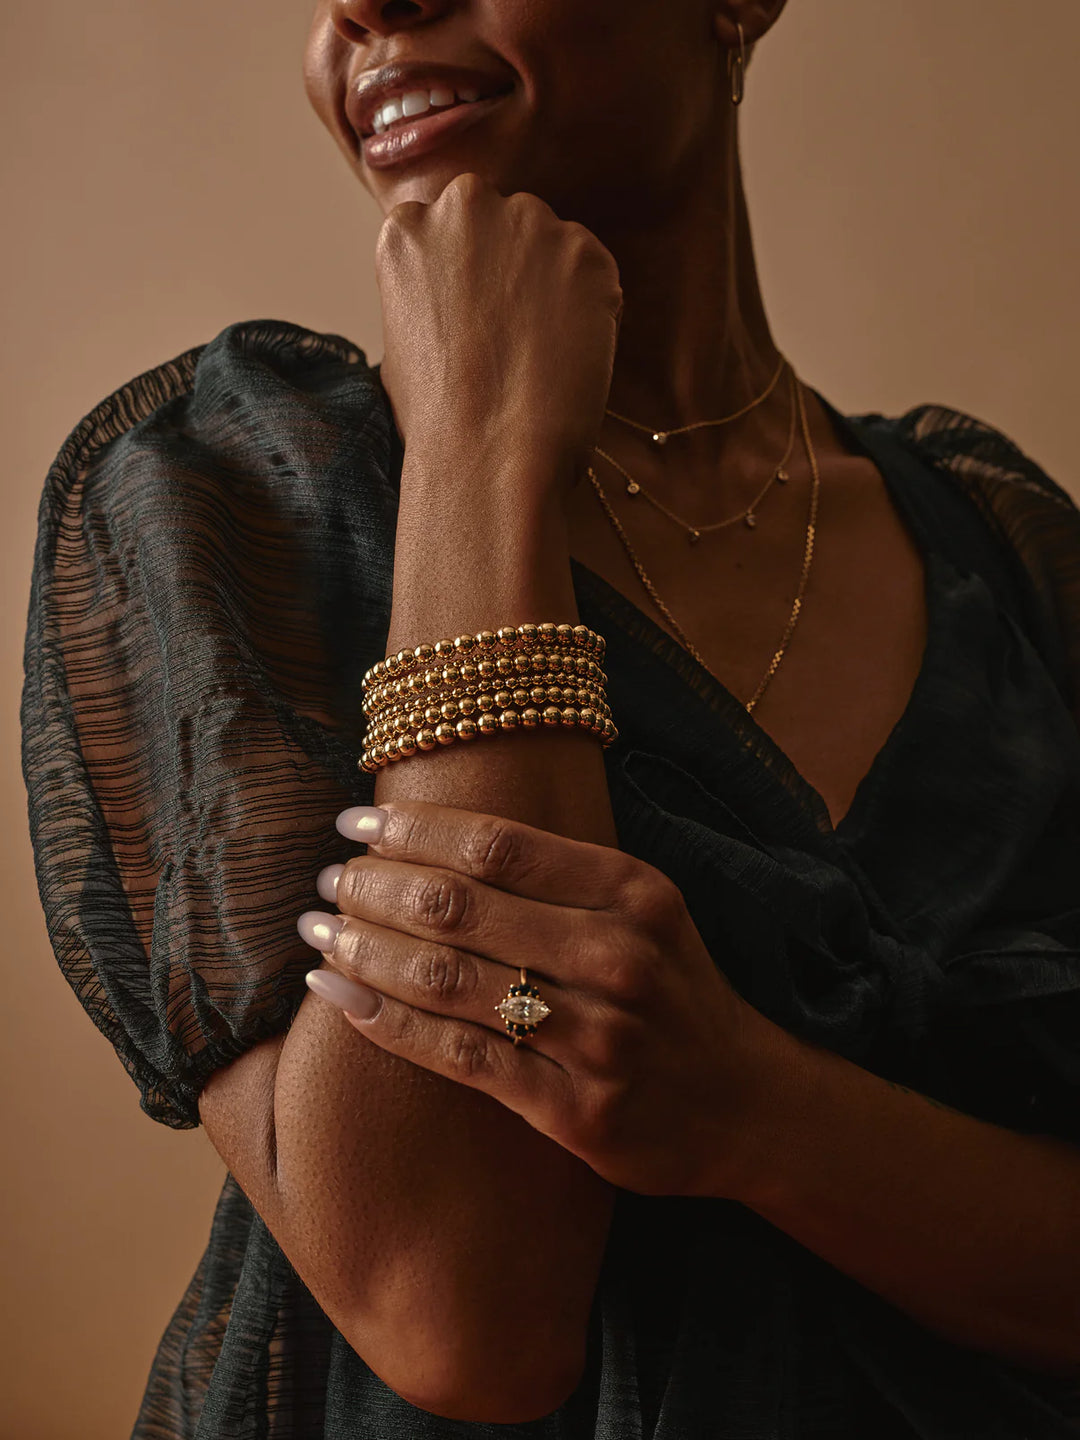 x Fine Jewelry - 14KG Yellow Gold Beads Bracelet